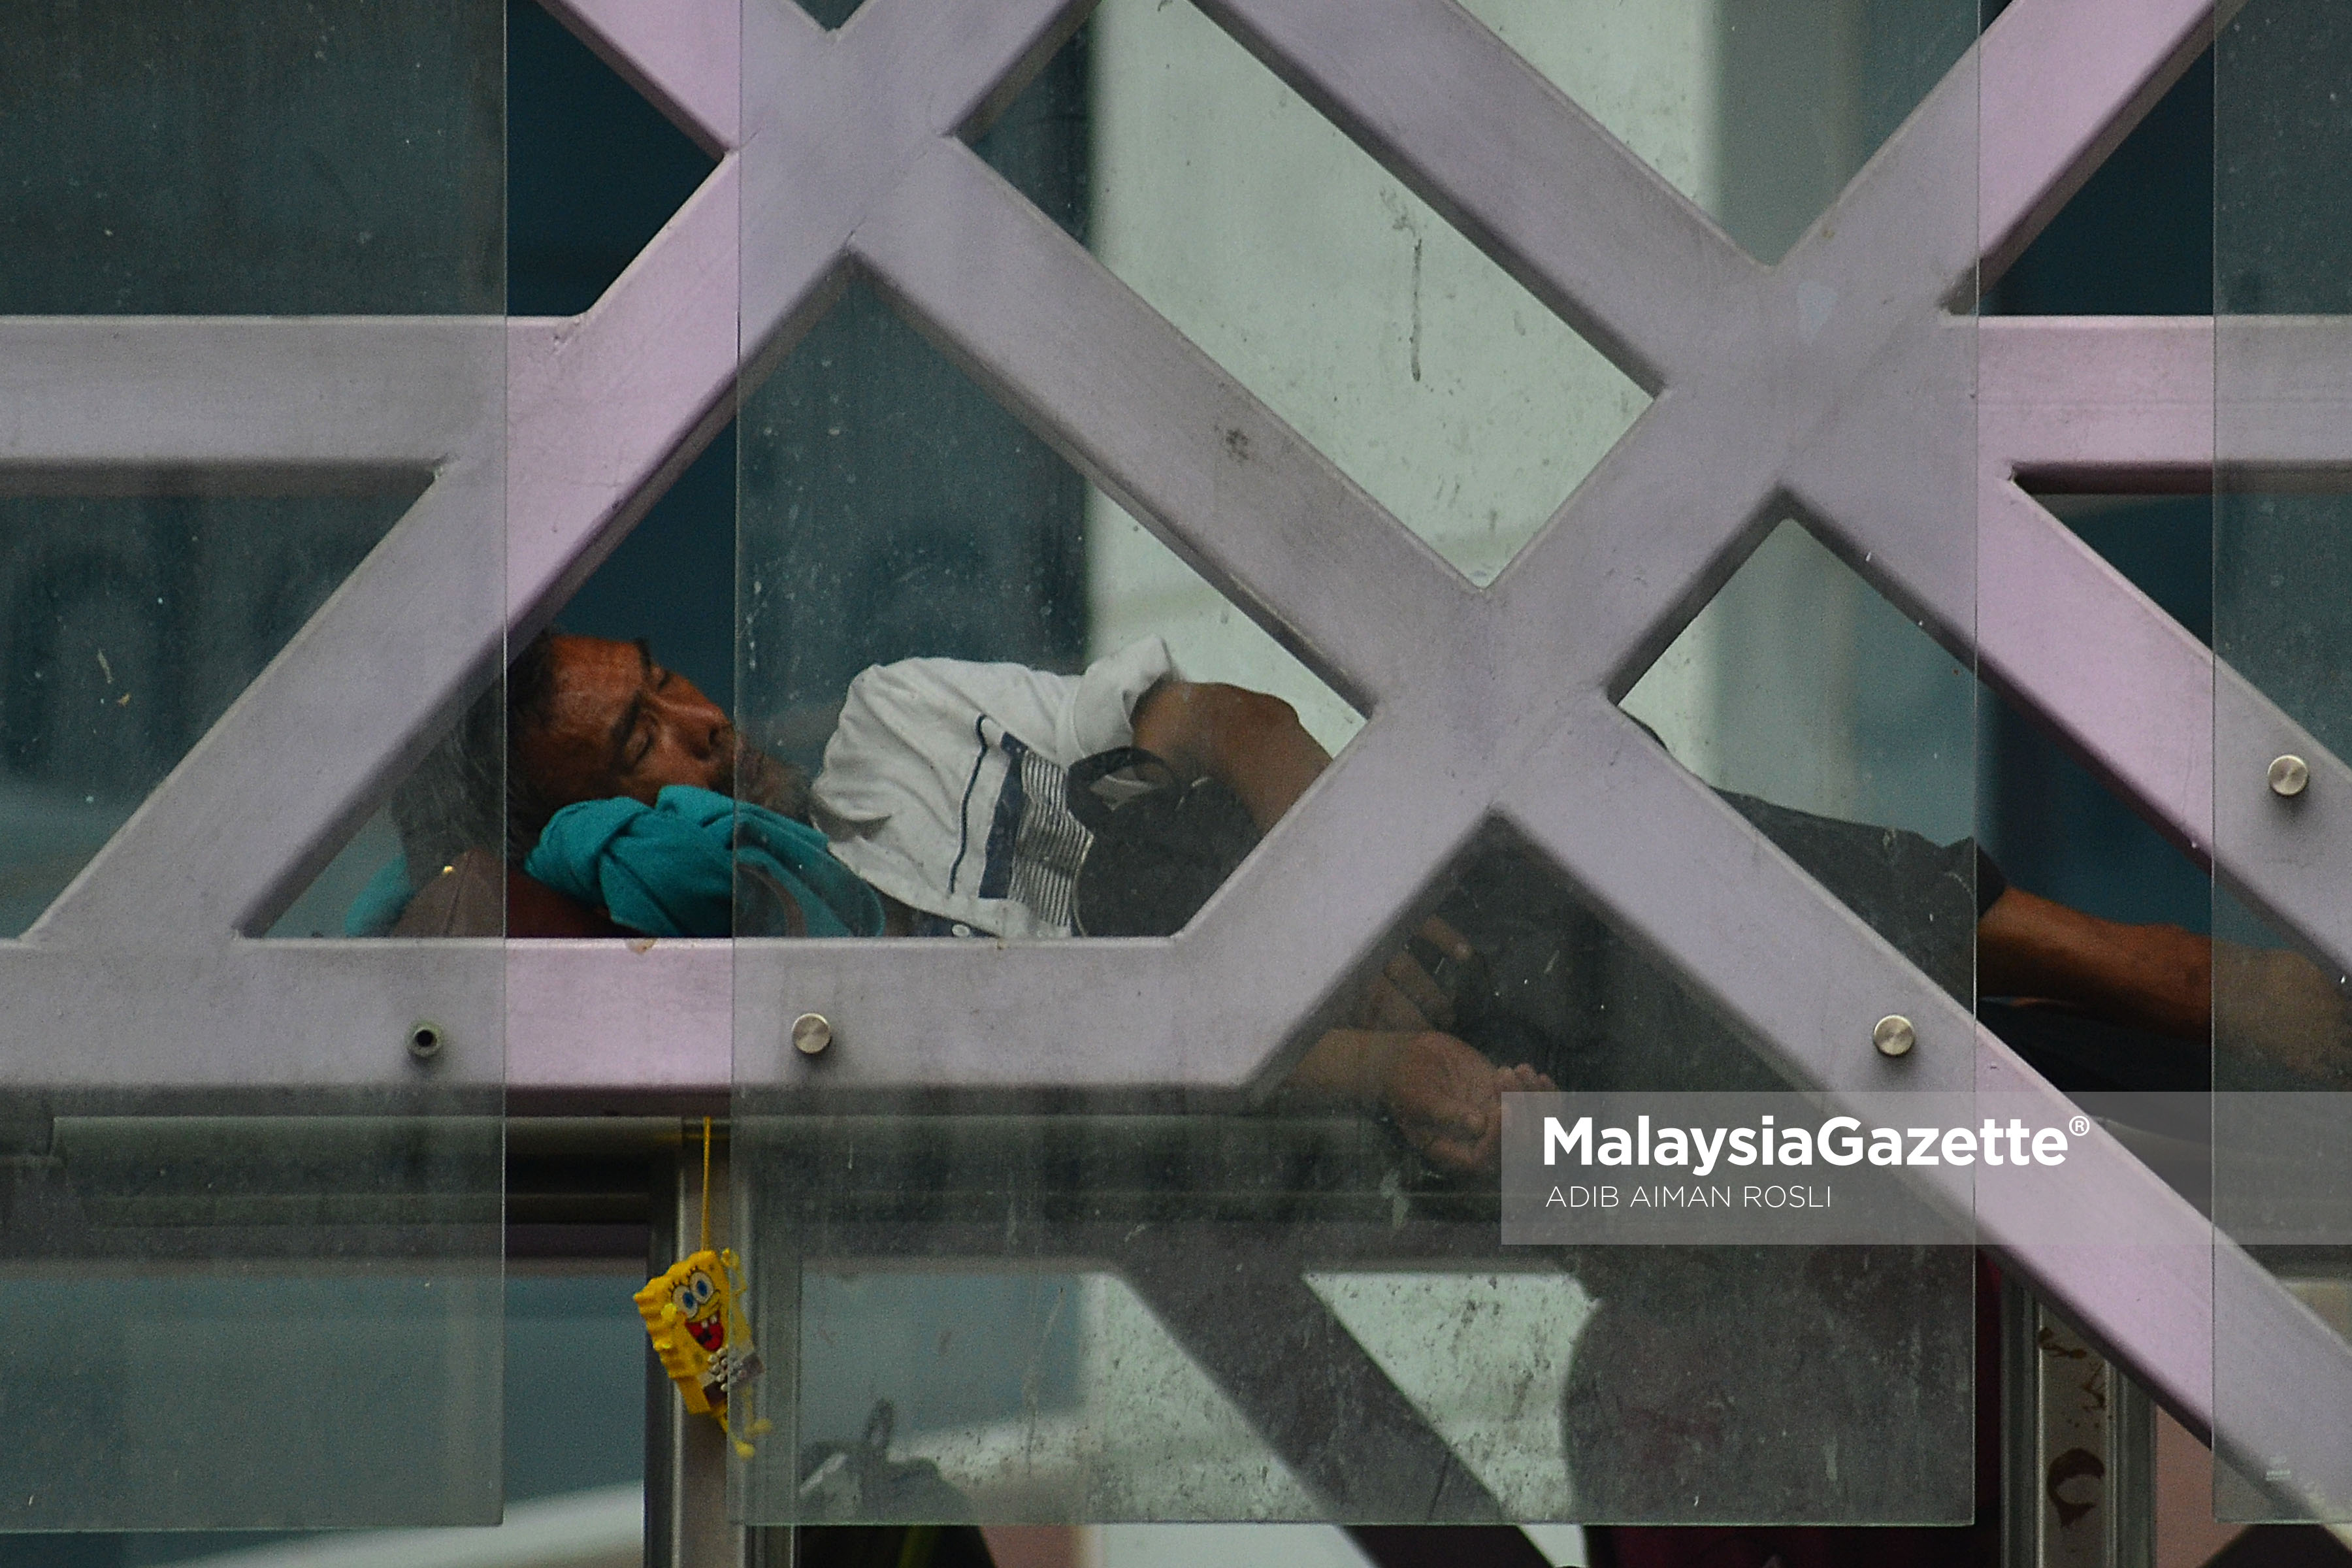 Seorang gelandangan tidur di jejantas ketika tinjauan lensa Malaysia Gazette sempena cuti umum Hari Wilayah Persekutuan di Jalan Chow Kit, Kuala Lumpur. foto ADIB AIMAN ROSLI, 01 FEBRUARI 2017